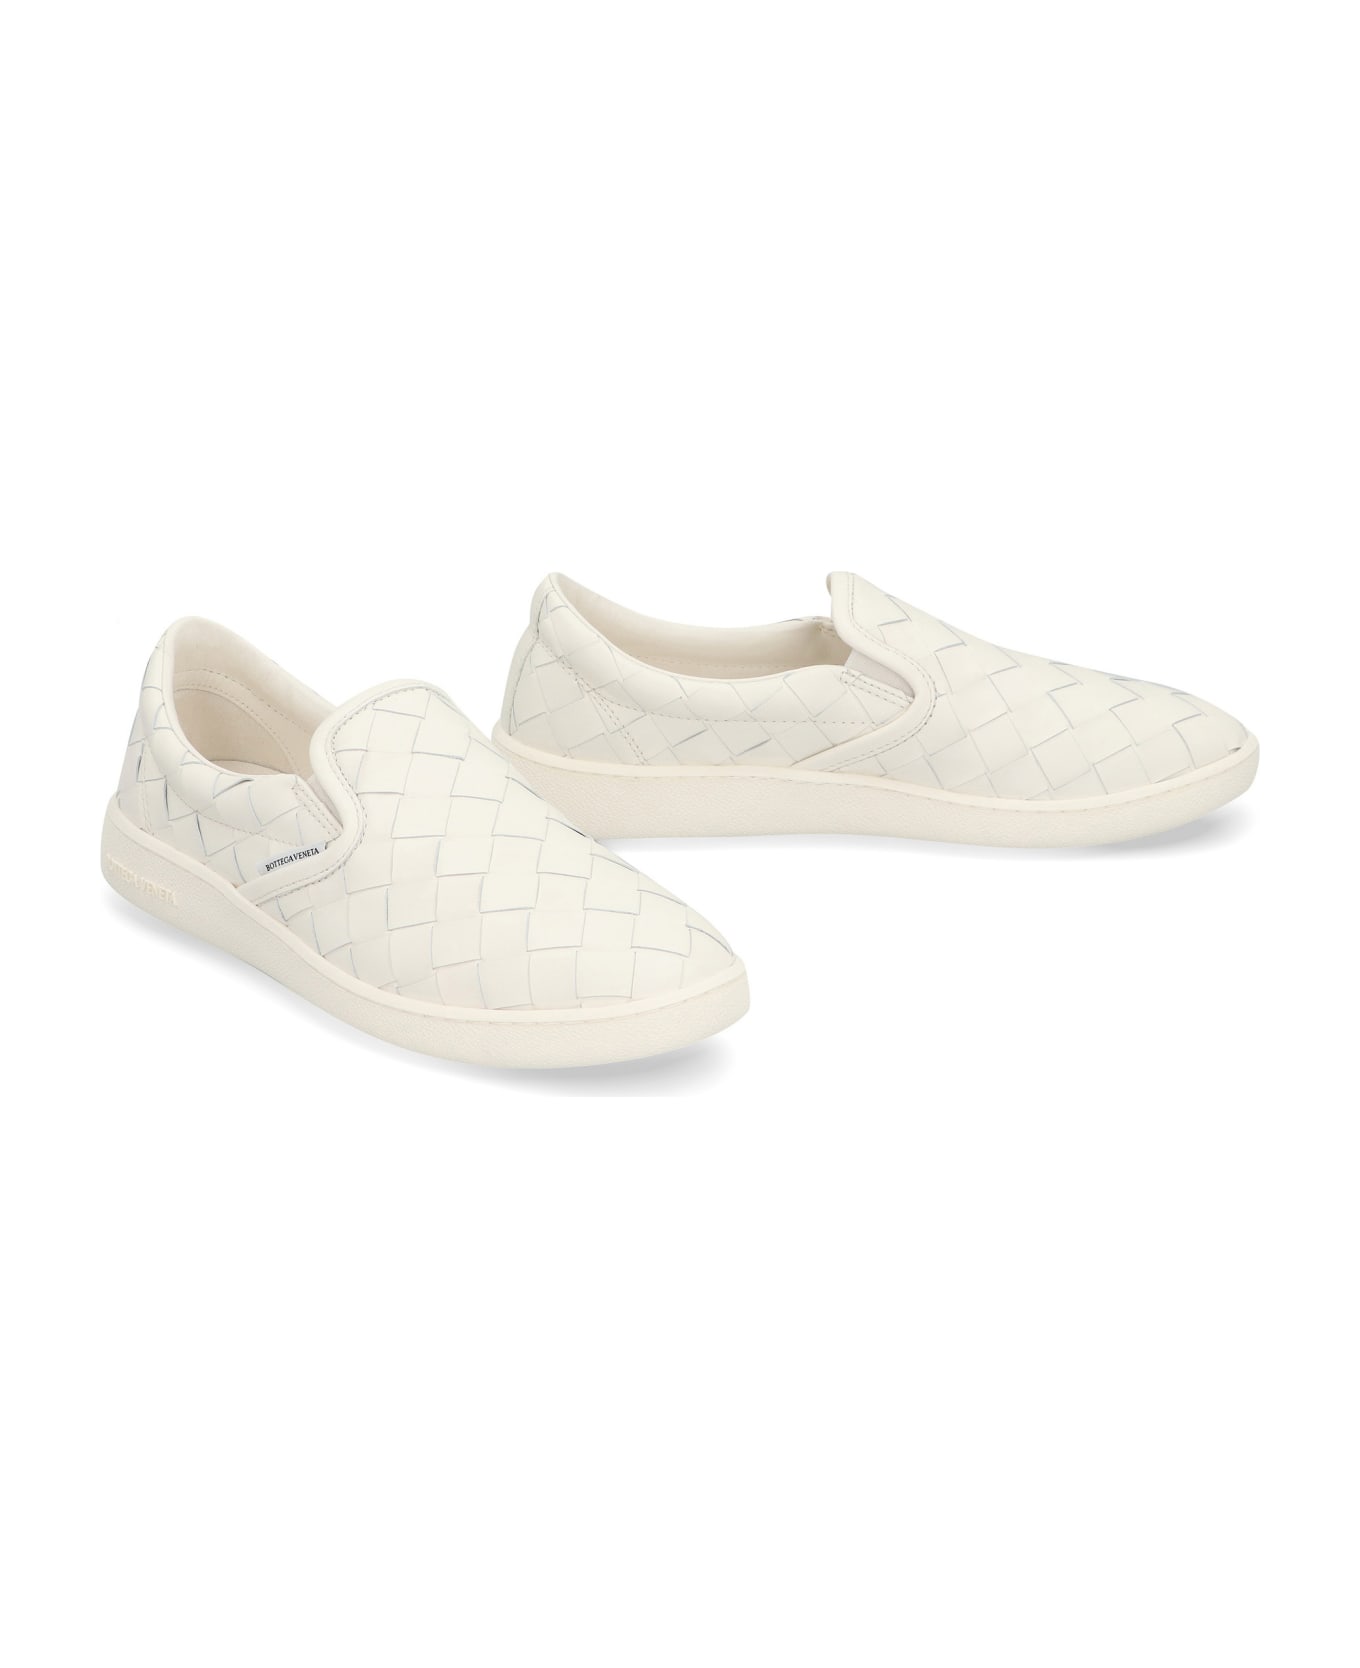 Bottega Veneta Sawyer Leather Sneakers - White